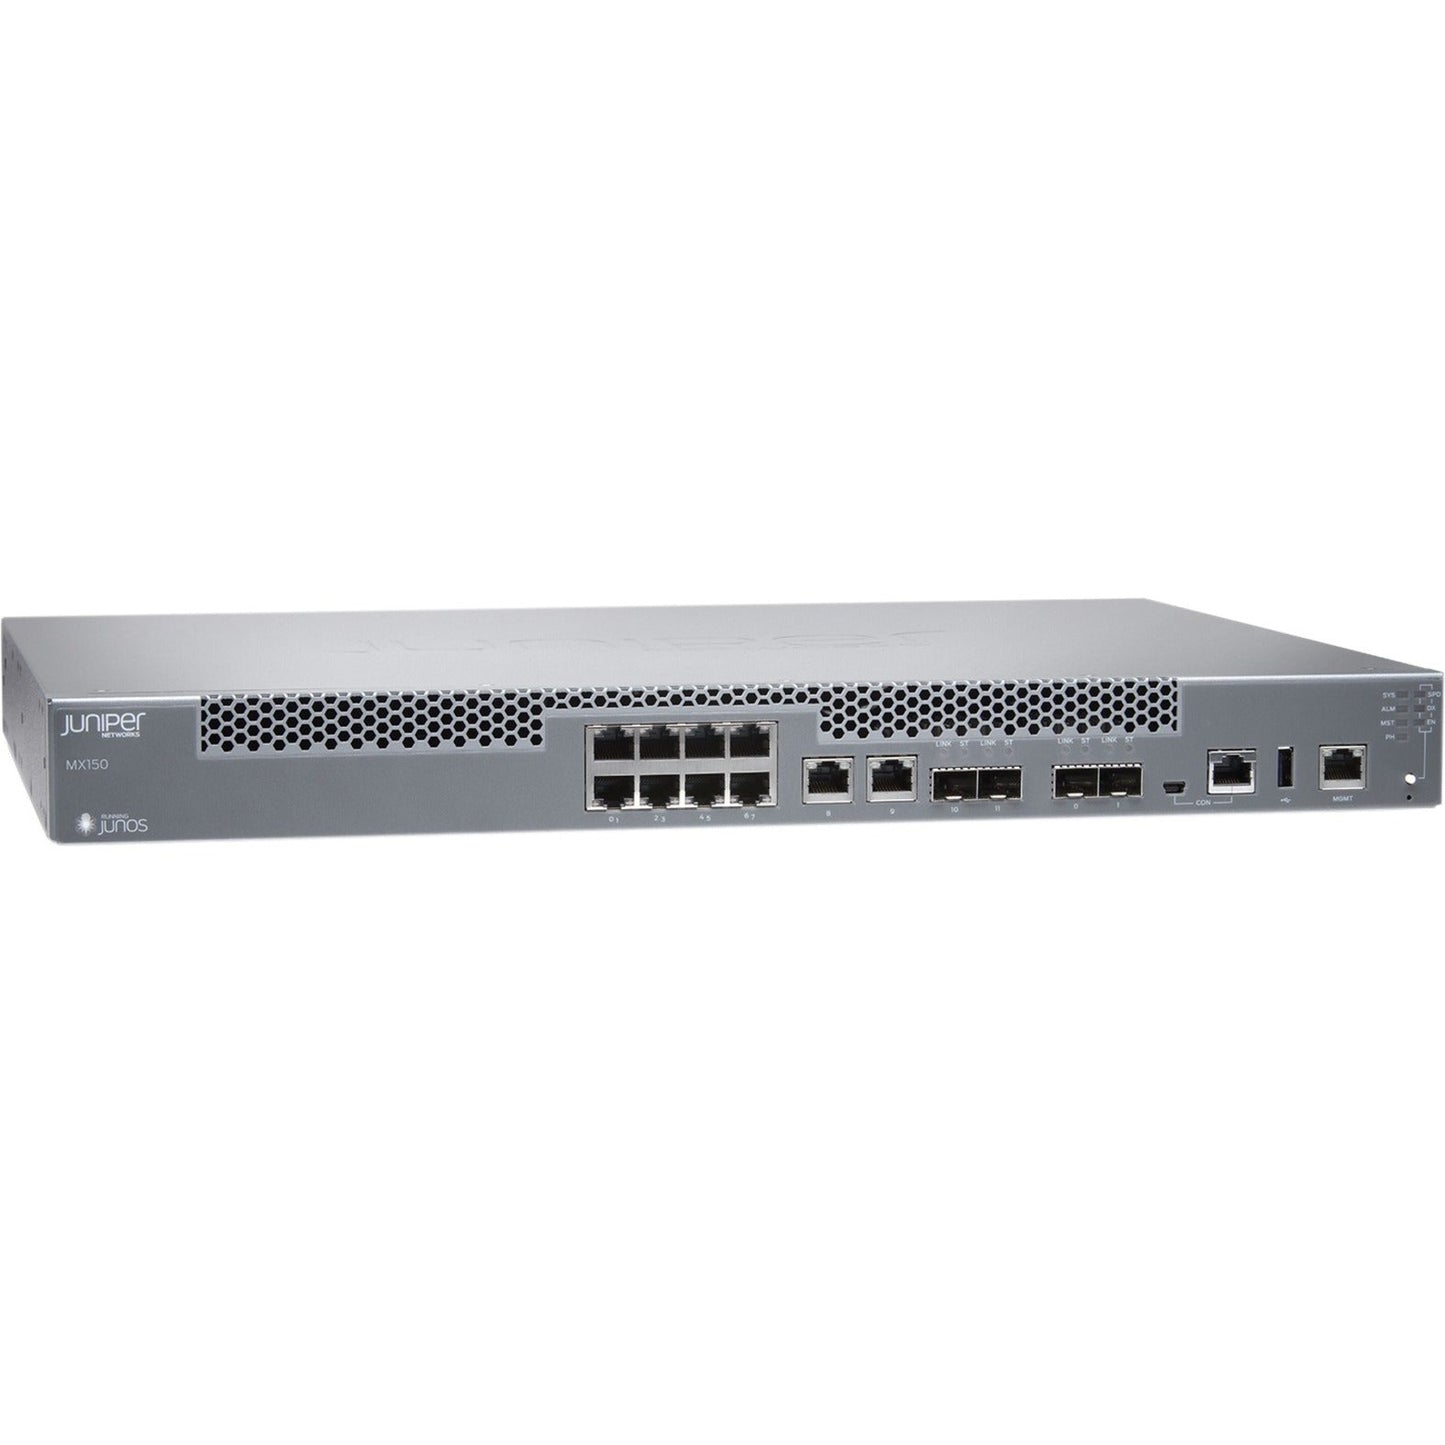 Juniper MX150 Router